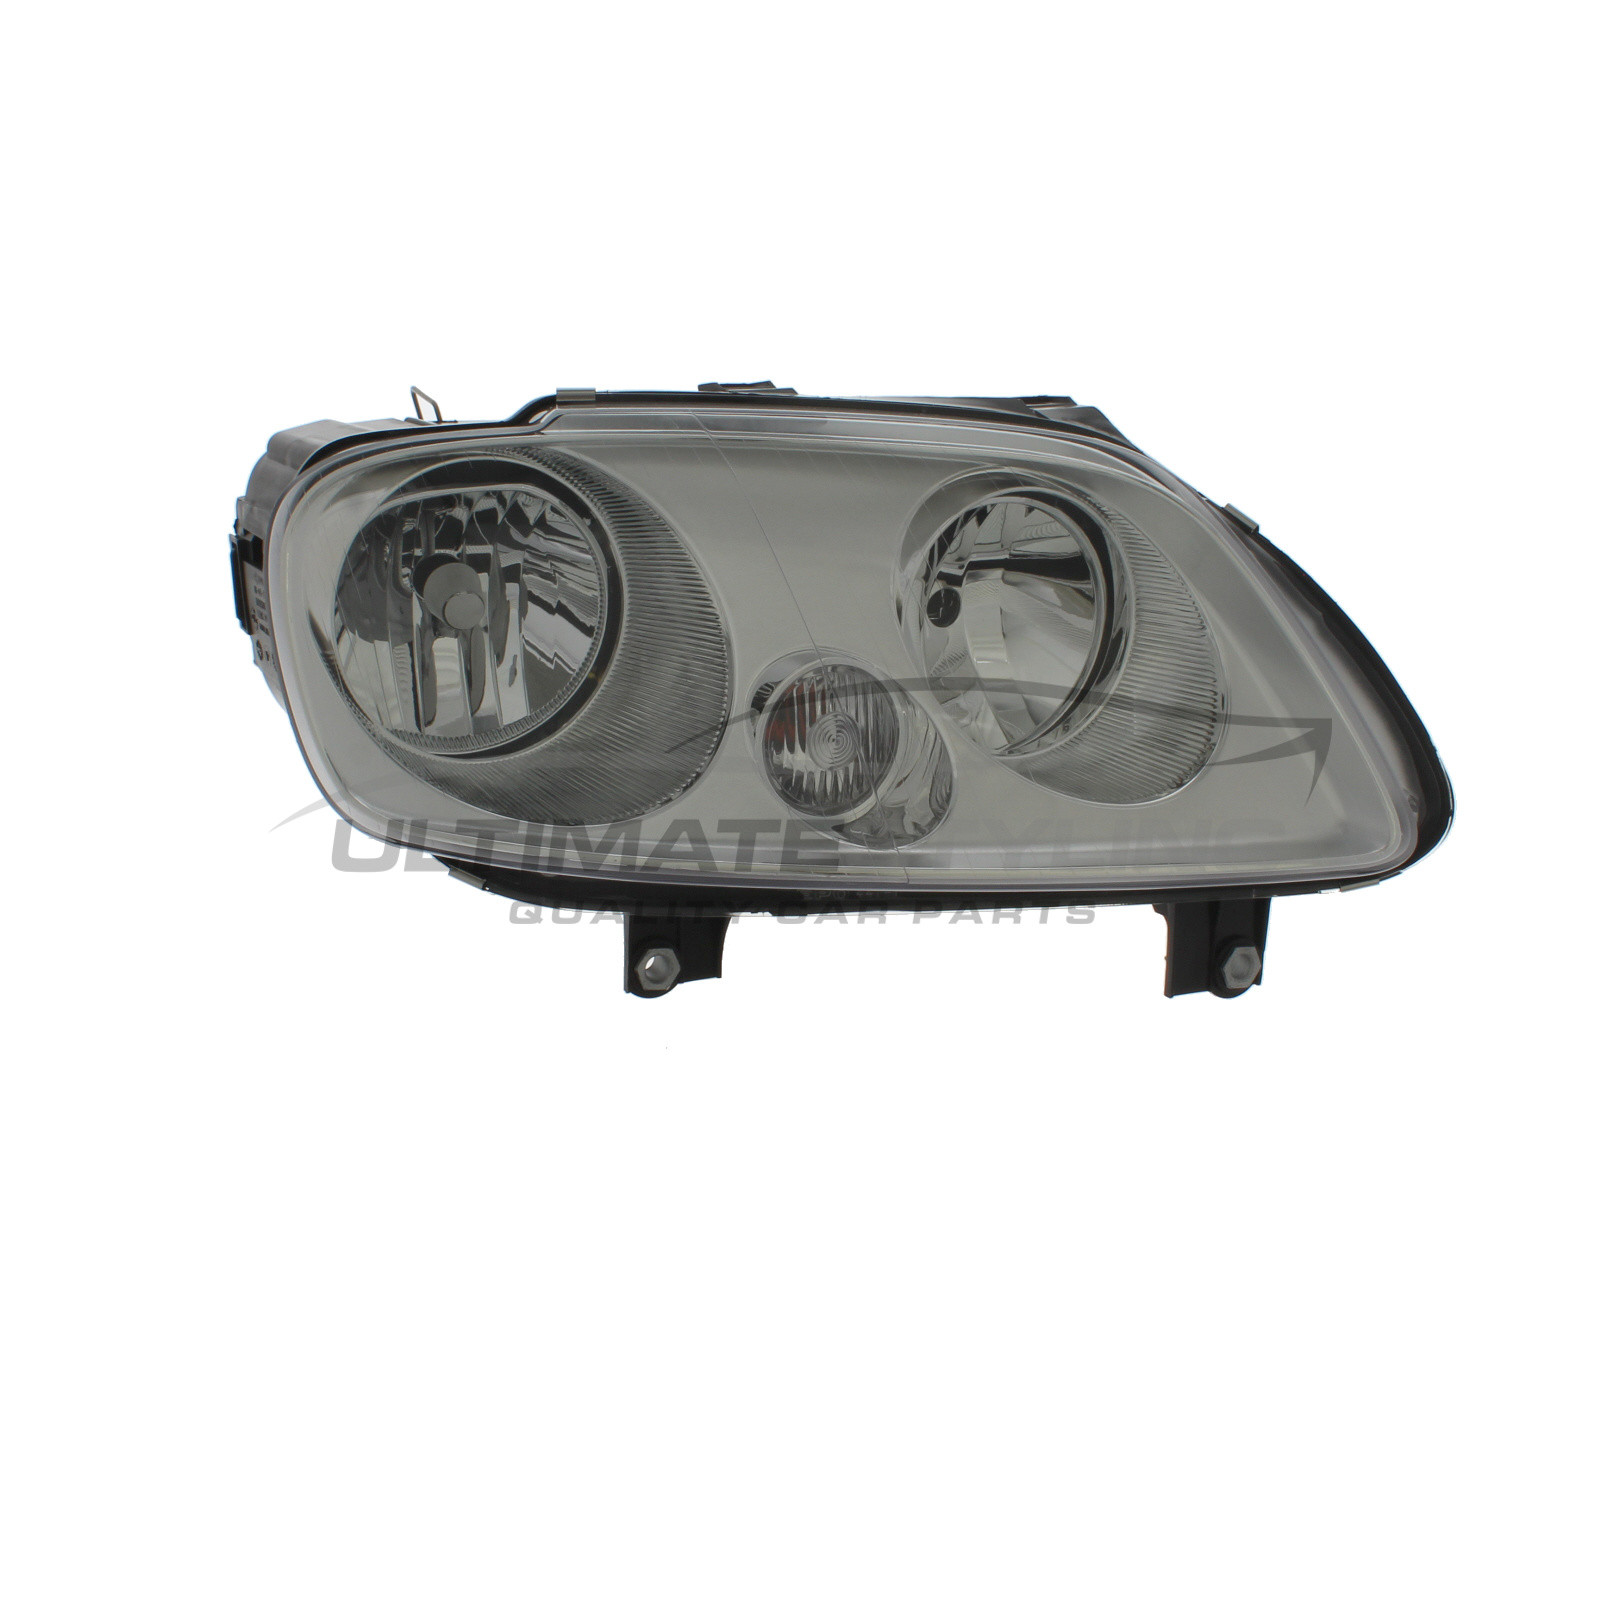 Headlight / Headlamp for VW Caddy